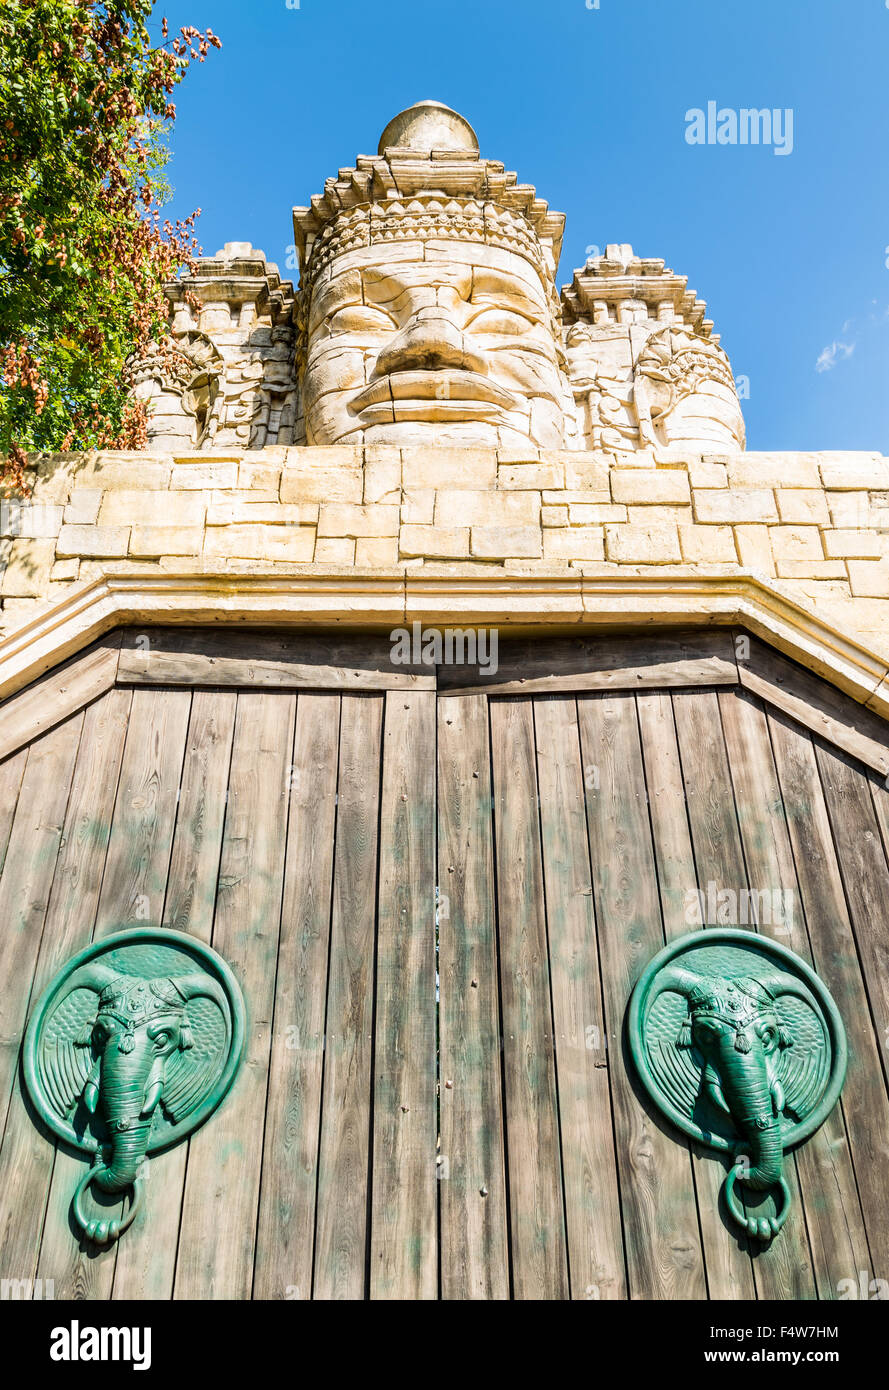 Facce di pietra di un tempio e portale in legno con sportello respingente conformata come elefante alla testa. Foto Stock